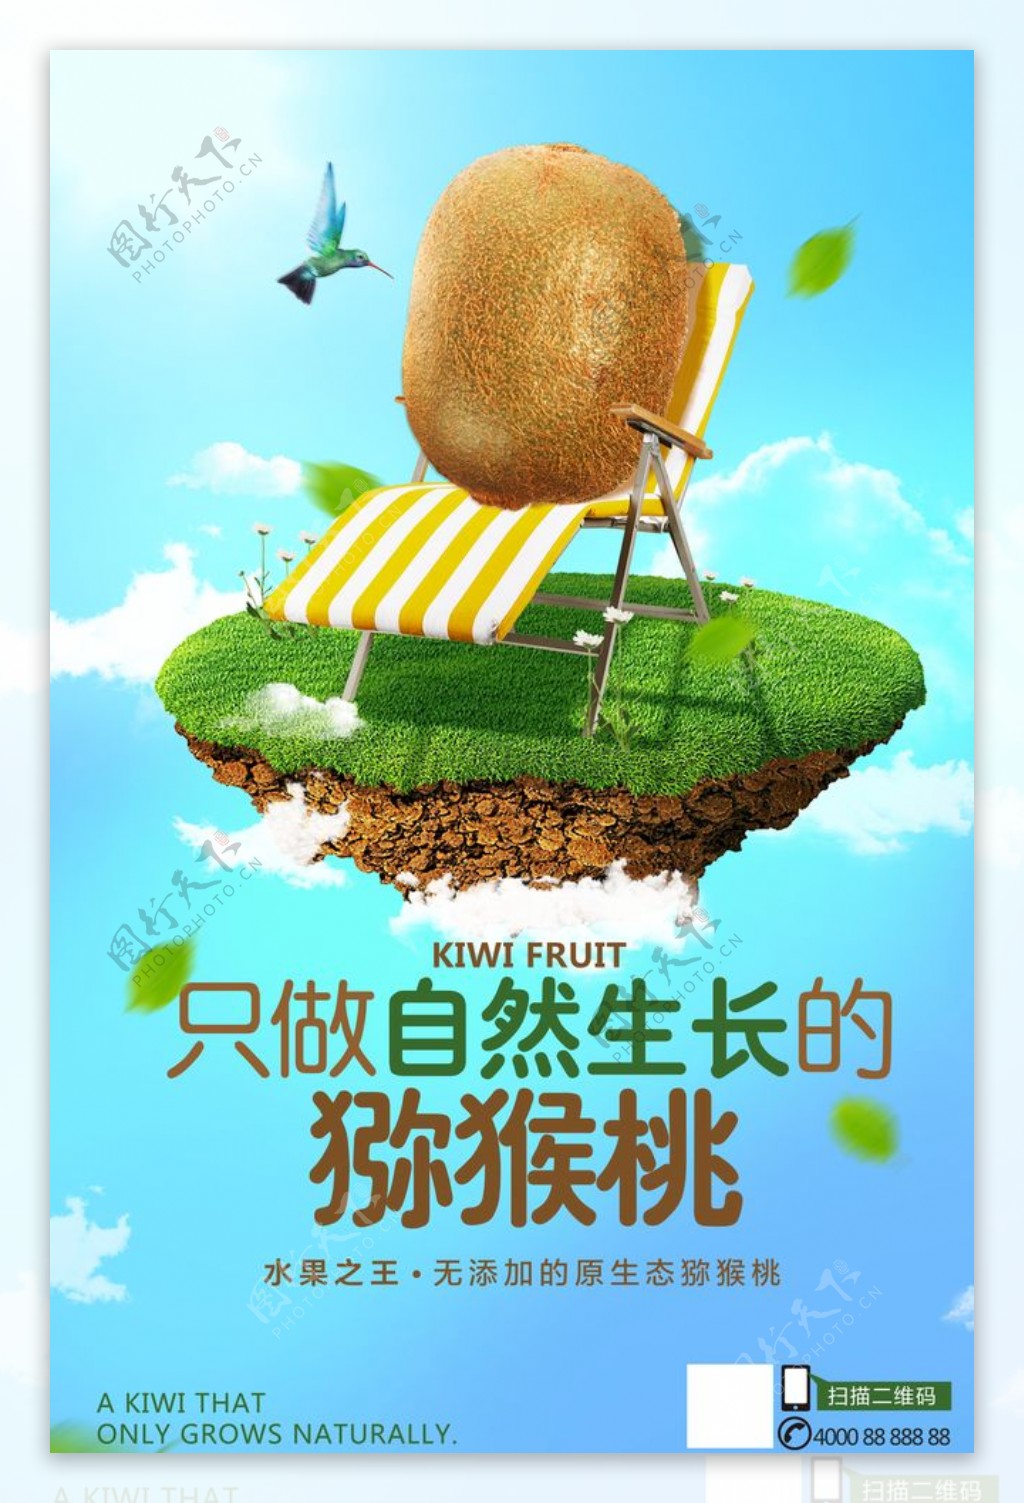 猕猴桃广告海报图片